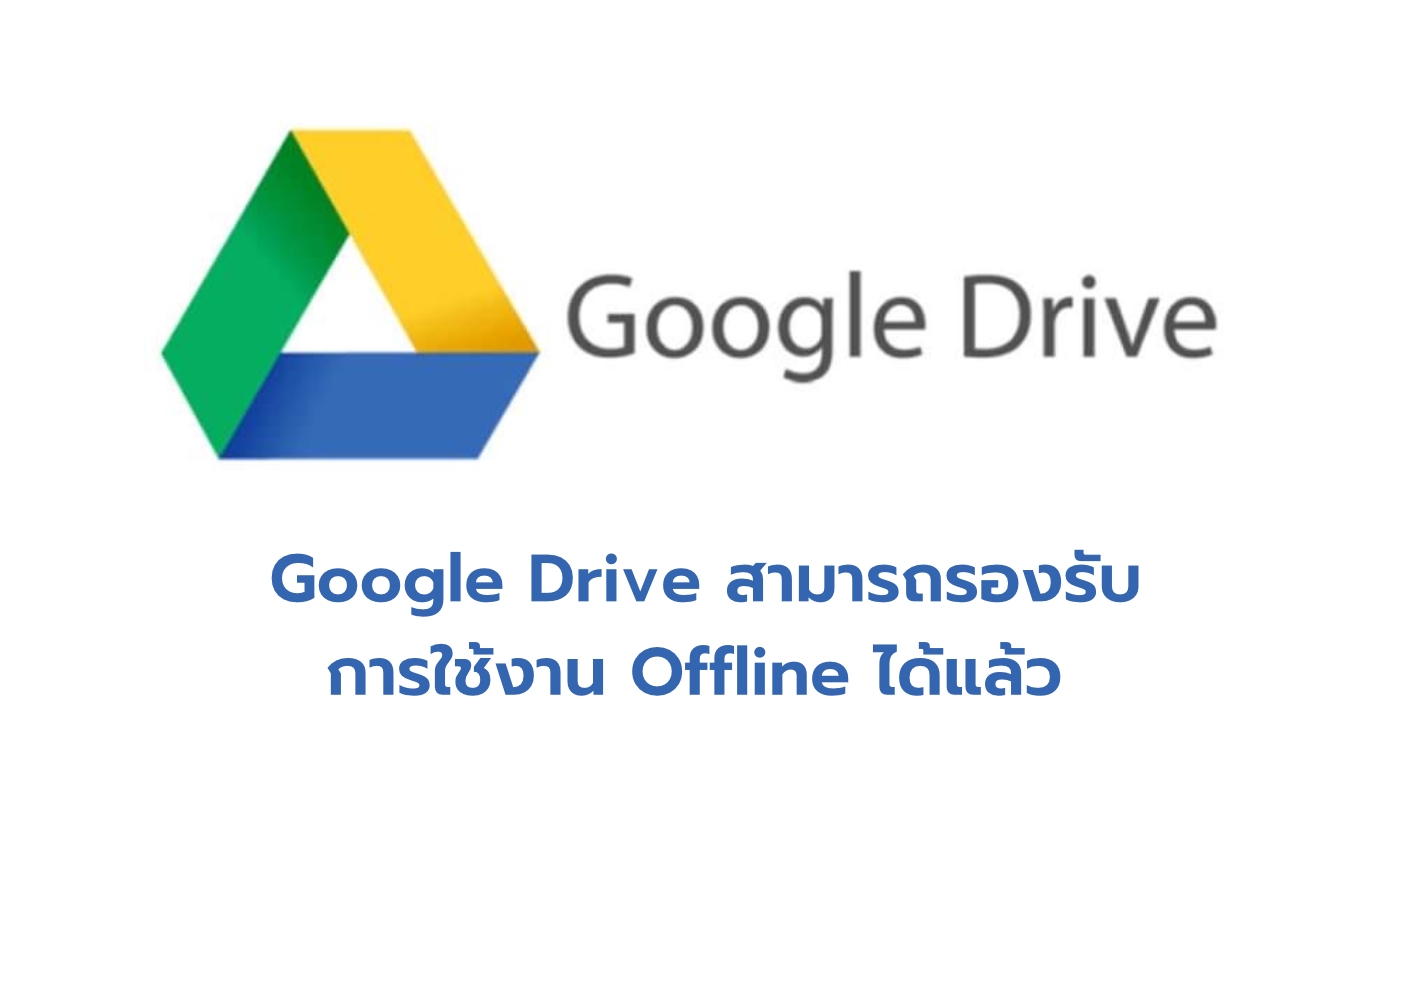 Google Drive สามารถรองรับการใช้งาน Offline ได้แล้ว